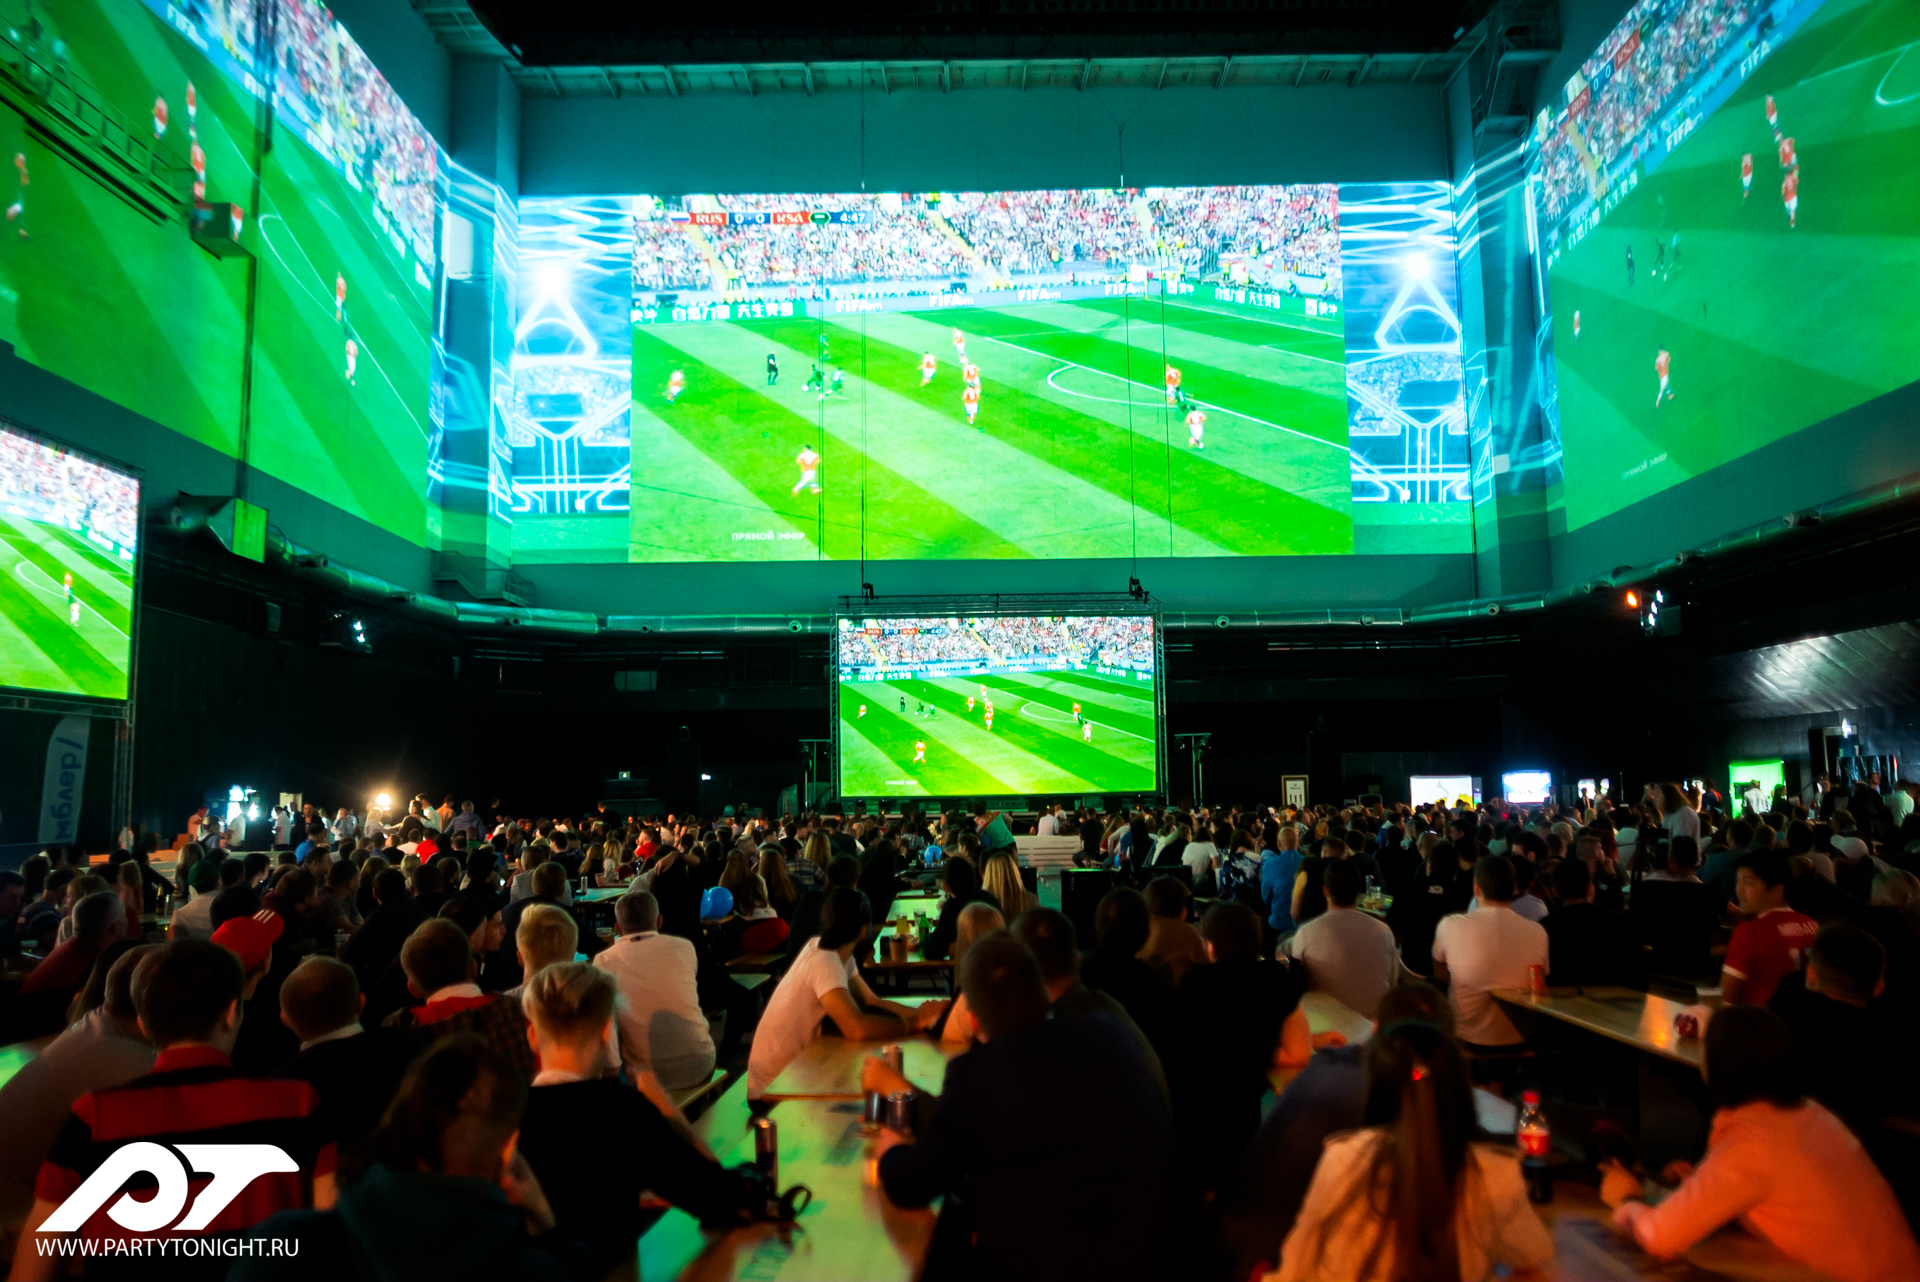 Большие экраны футбол. Трансляция на большом экране. Трансляция футбола на большом экране. Большой экран футбол Москва. Трансляция матча большой экран.